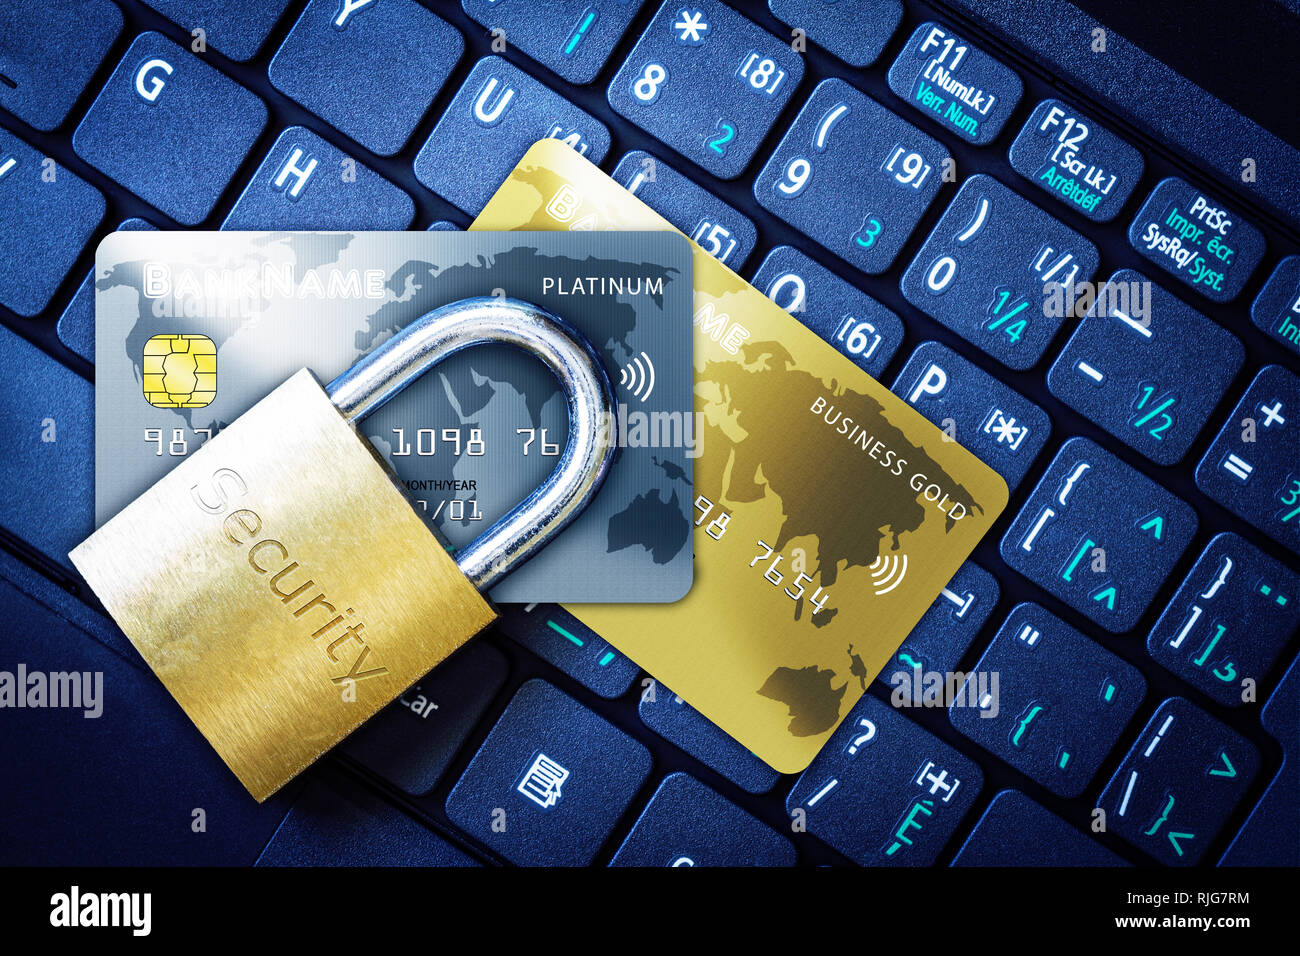 Goldene Vorhängeschloss auf fiktiven Kreditkarten auf der Computertastatur. Konzept der Internet Security, Datenschutz, Computerkriminalität Verhinderung für online Sh Stockfoto